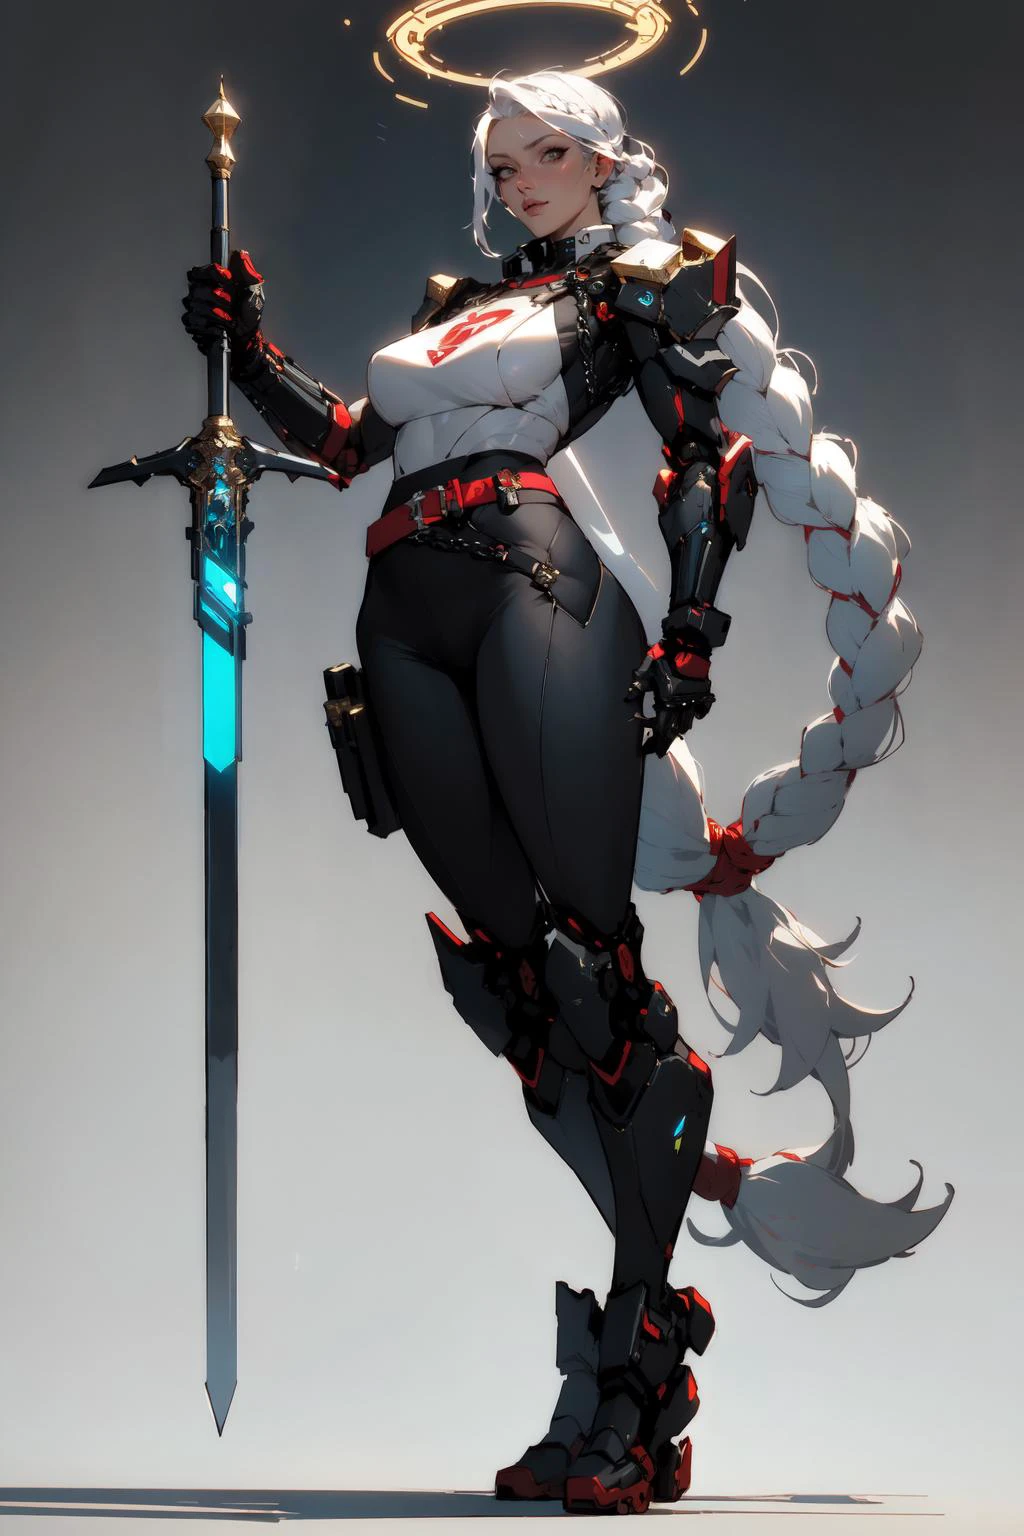 nijiEstilo, Cuerpo completo de dama paladín cyberpunk sosteniendo una gran espada brillante, tabardo blanco, hombreras, pelo blanco, trenza, Cinturón rojo, cybernetic halo, brazo mecanico, fondo sencillo 